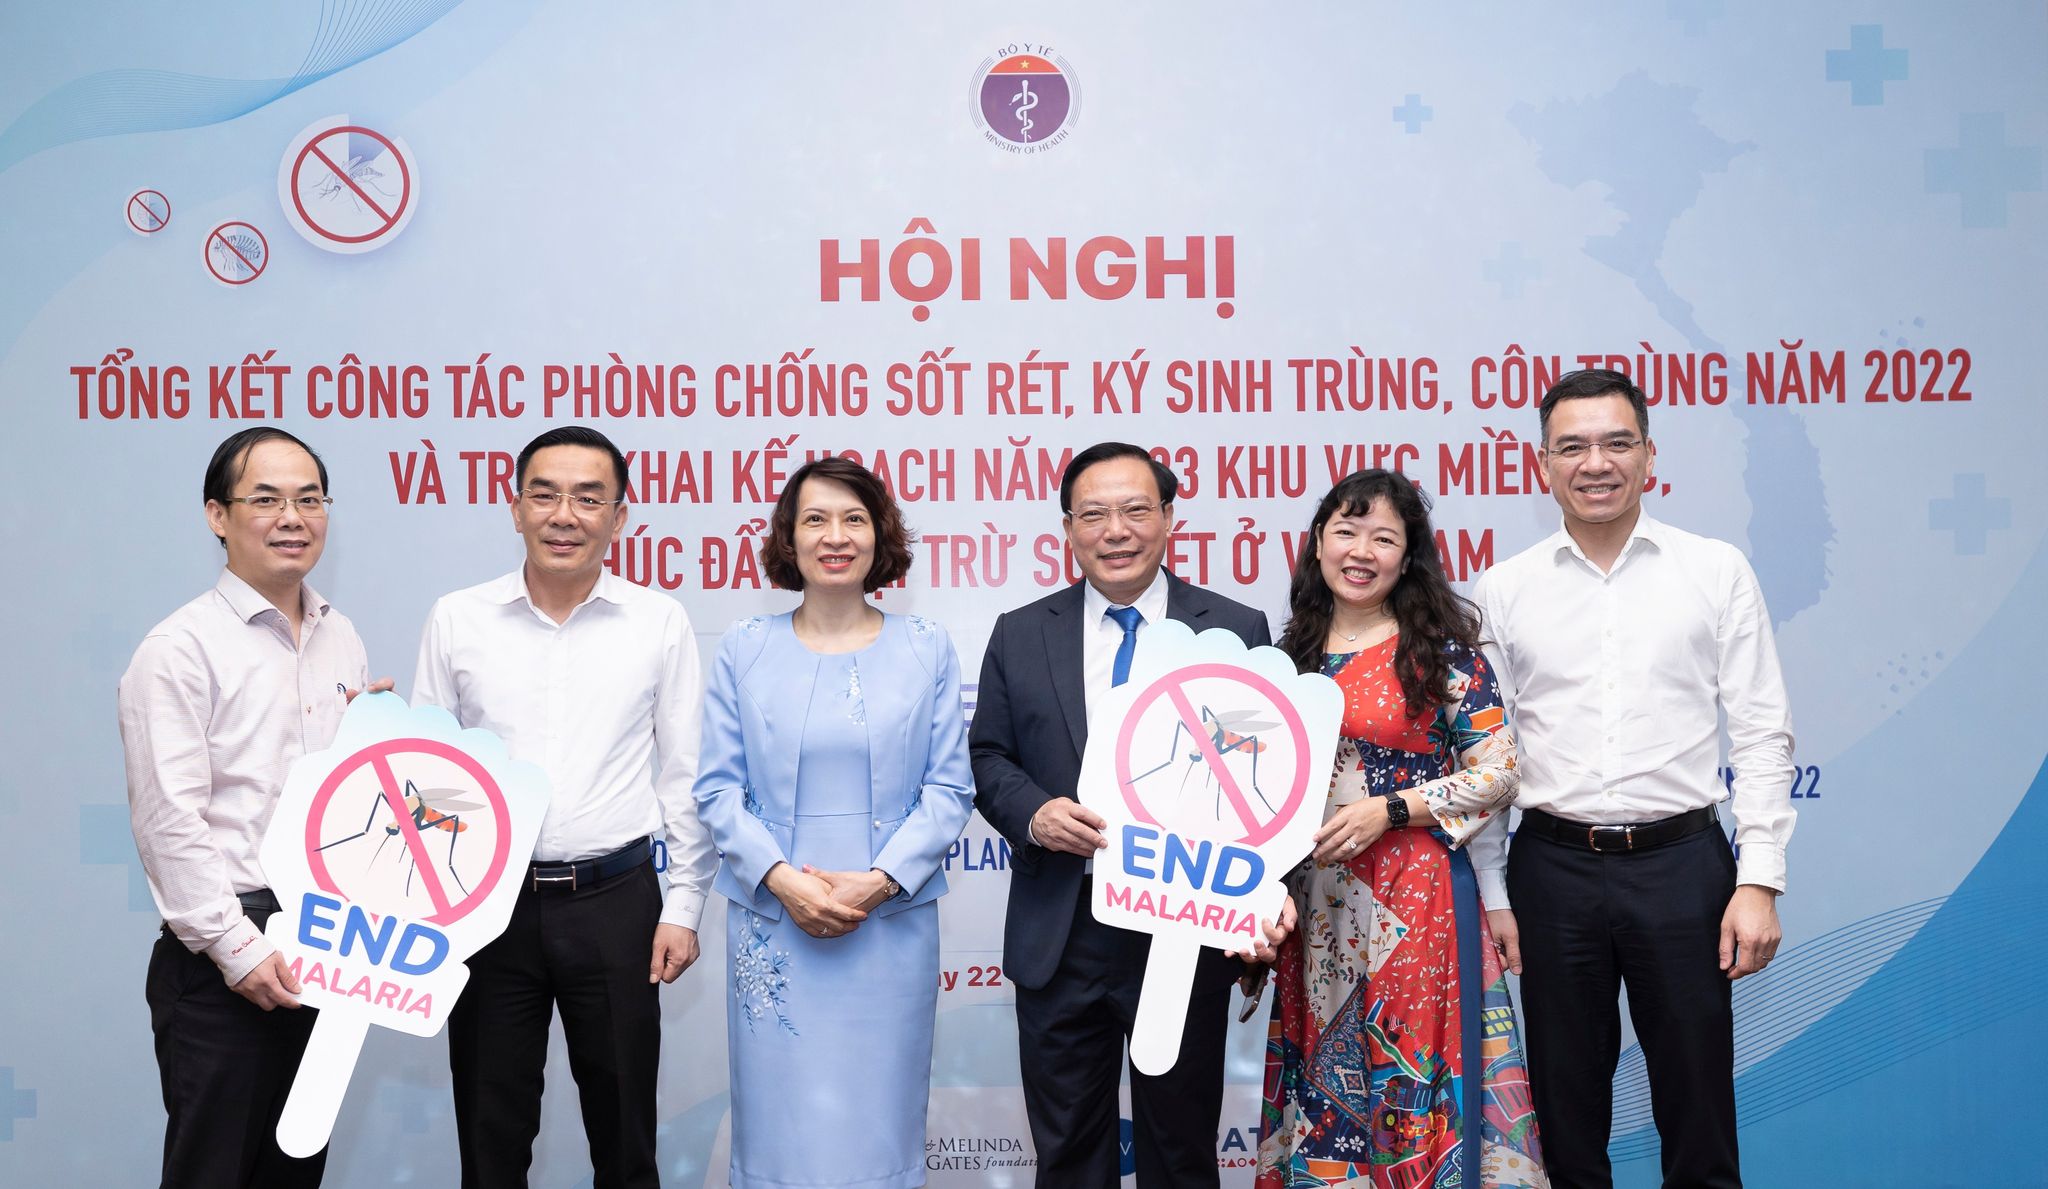 Thứ trưởng Nguyễn Thị Liên Hương (áo xanh thứ 3 từ trái sang) cùng lãnh đạo các Vụ/Cục/Văn phòng Bộ Y tế và lãnh đạo Viện Sốt rét - Ký sinh trùng - Côn trùng Trung ương tại hội nghị.